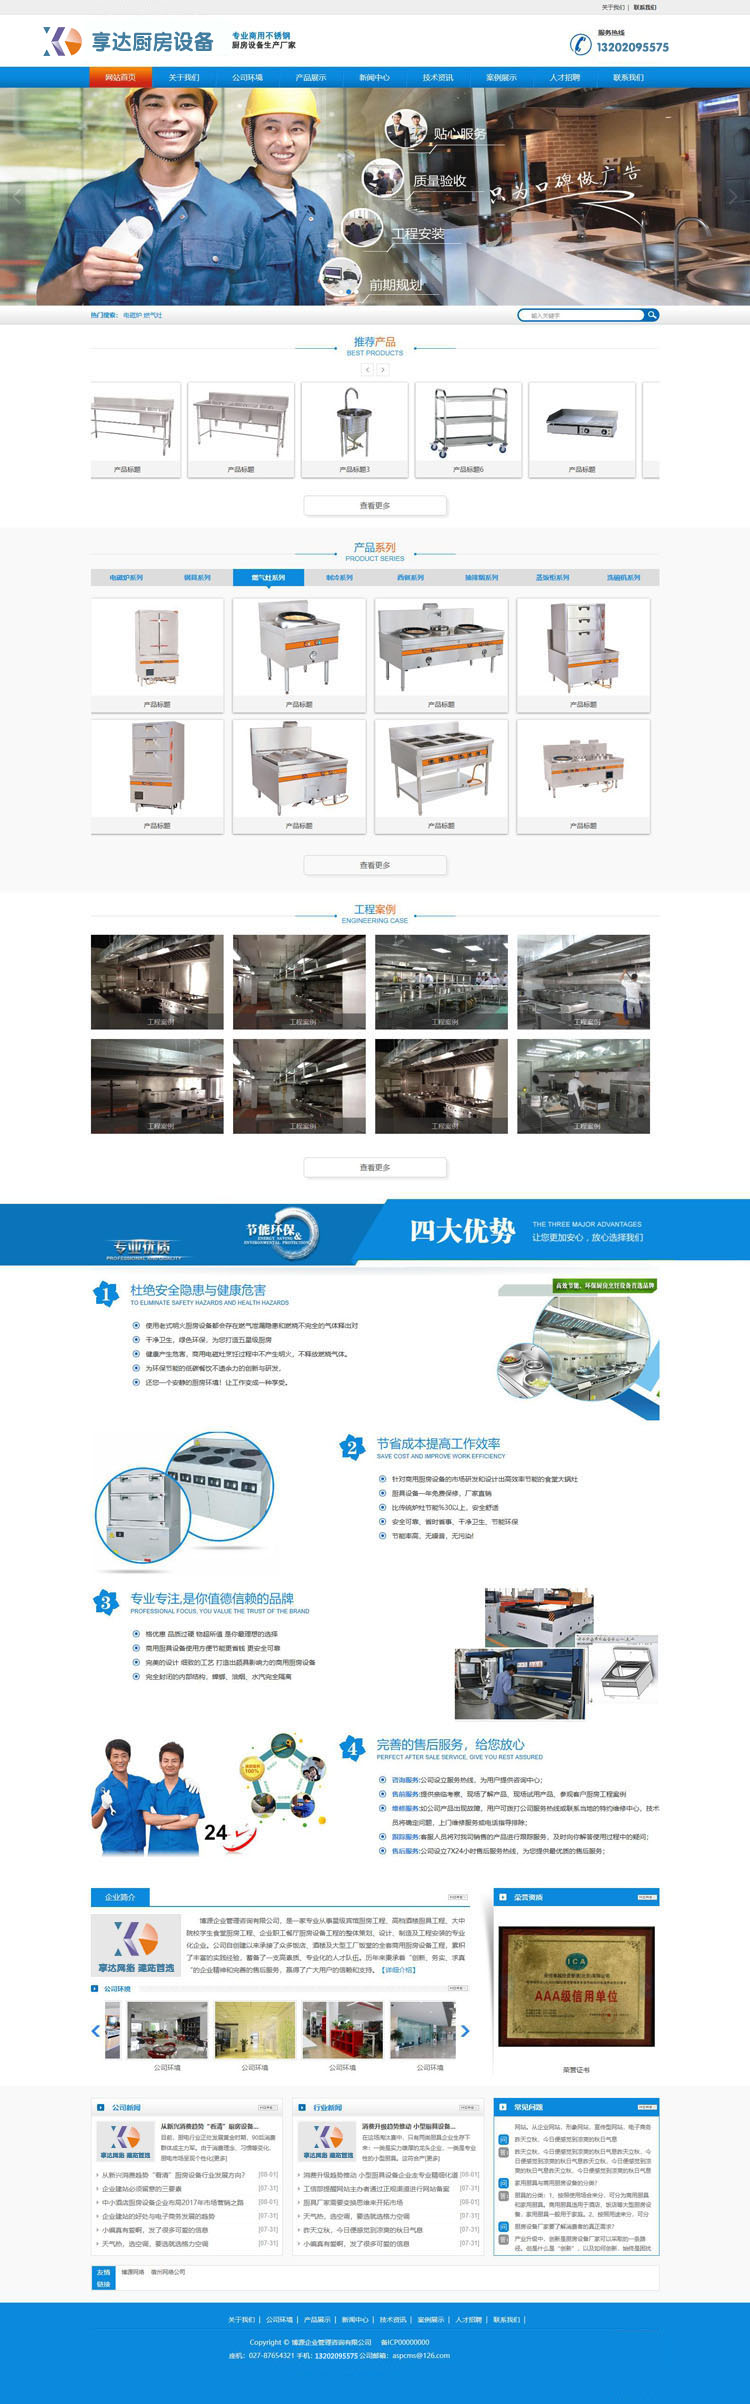 云南企业网站建设 | 980元制作一个商业厨房设备公司厂家网站 制作商业厨房设备公司厂家网站图片